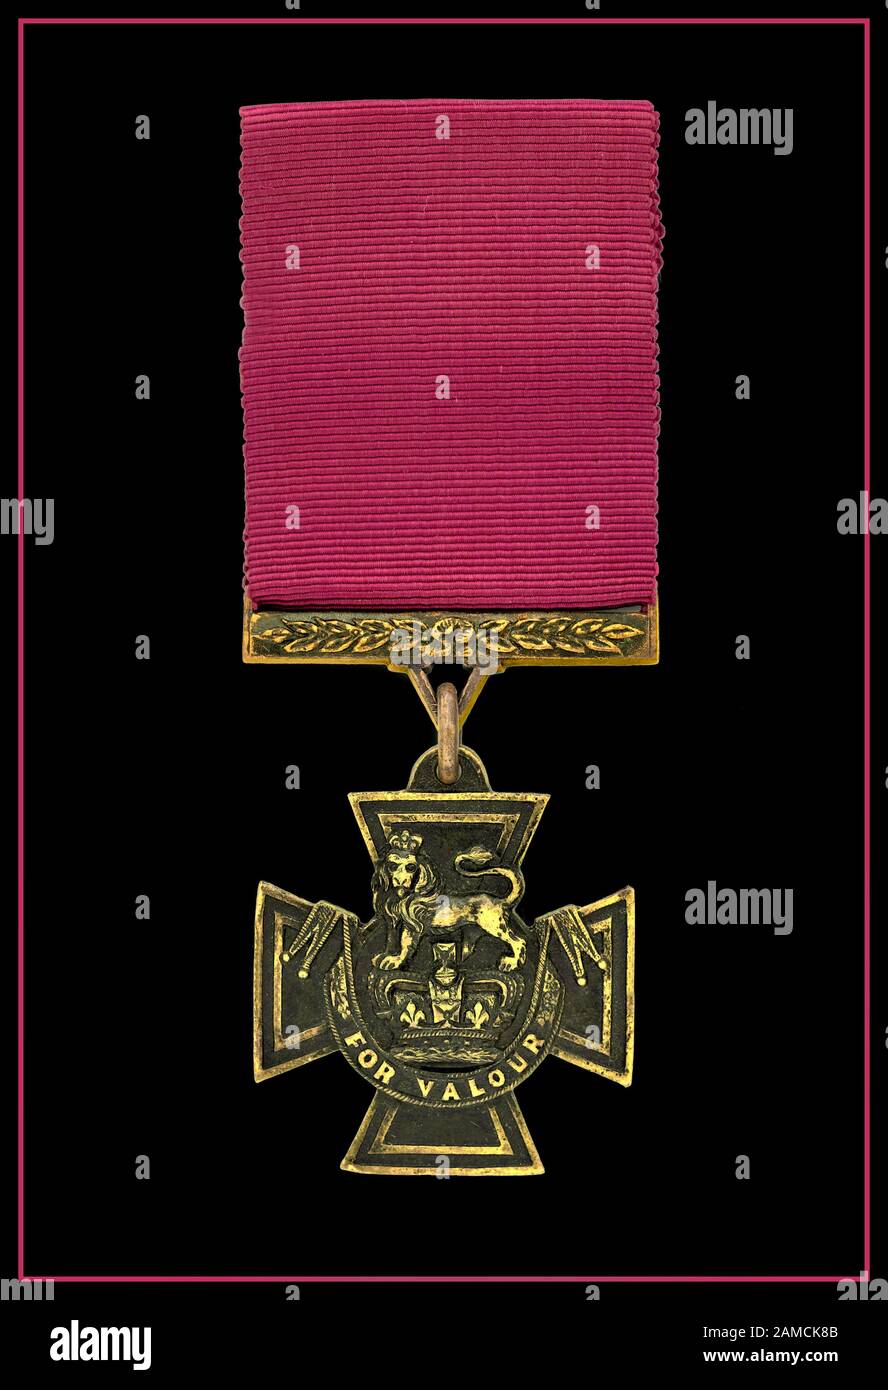 La Médaille de la Croix de Victoria a été décernée pour la Vaillance Remarquable. Le prix militaire le plus élevé du Royaume-Uni pour la bravoure face à l'ennemi. La Croix de Victoria (VC) est le prix le plus élevé et le plus prestigieux du système britannique des honneurs, de la bravoure la plus visible, ou d'un acte audacieux ou prééminent de vaillance ou d'auto-sacrifice, ou d'une dévotion extrême au devoir en présence de l'ennemi Banque D'Images